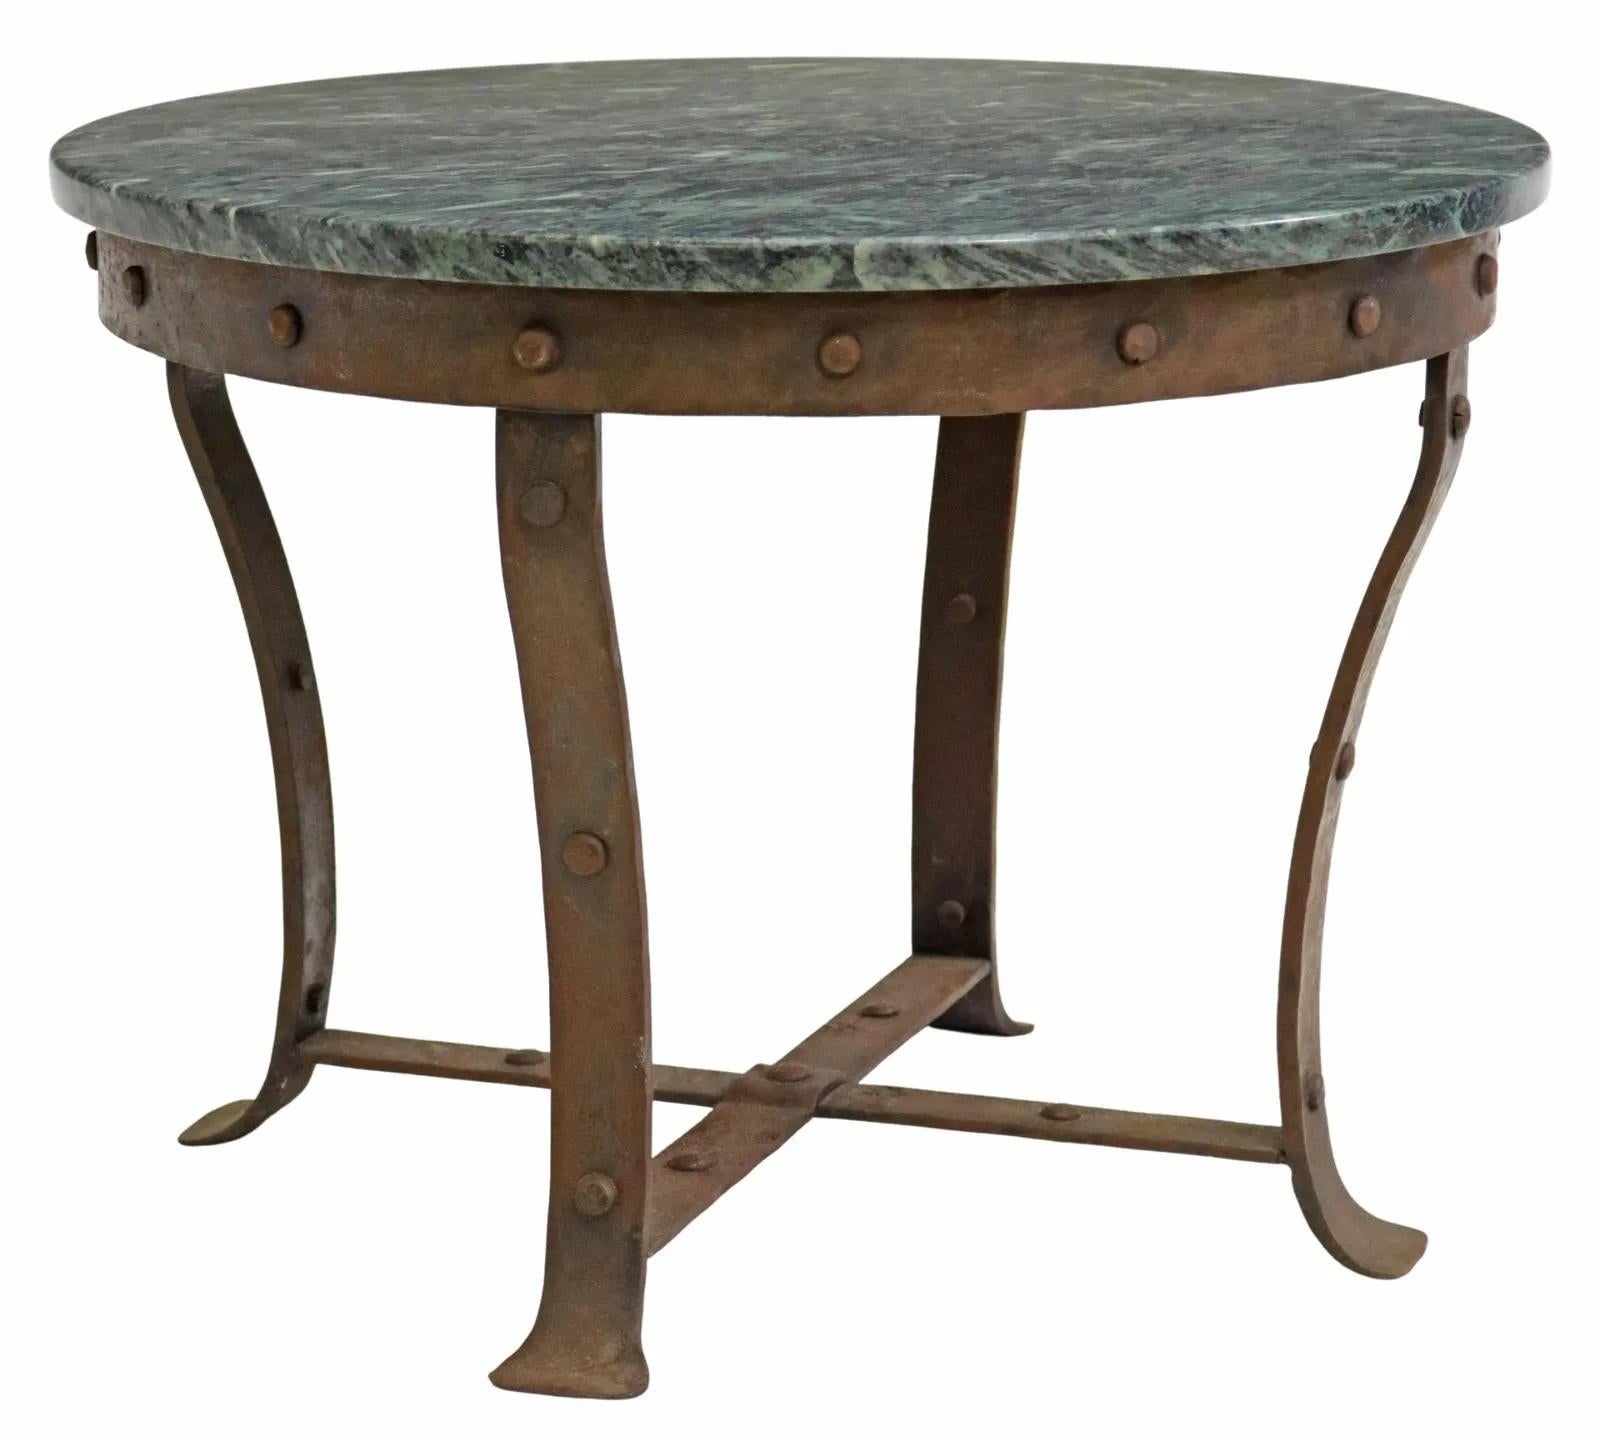 Table basse rustique française en marbre et en fer, 20e C., avec un plateau rond en marbre, sur des pieds courbés et articulés, avec des accents de rivets.

Dimensions : environ 18.25 